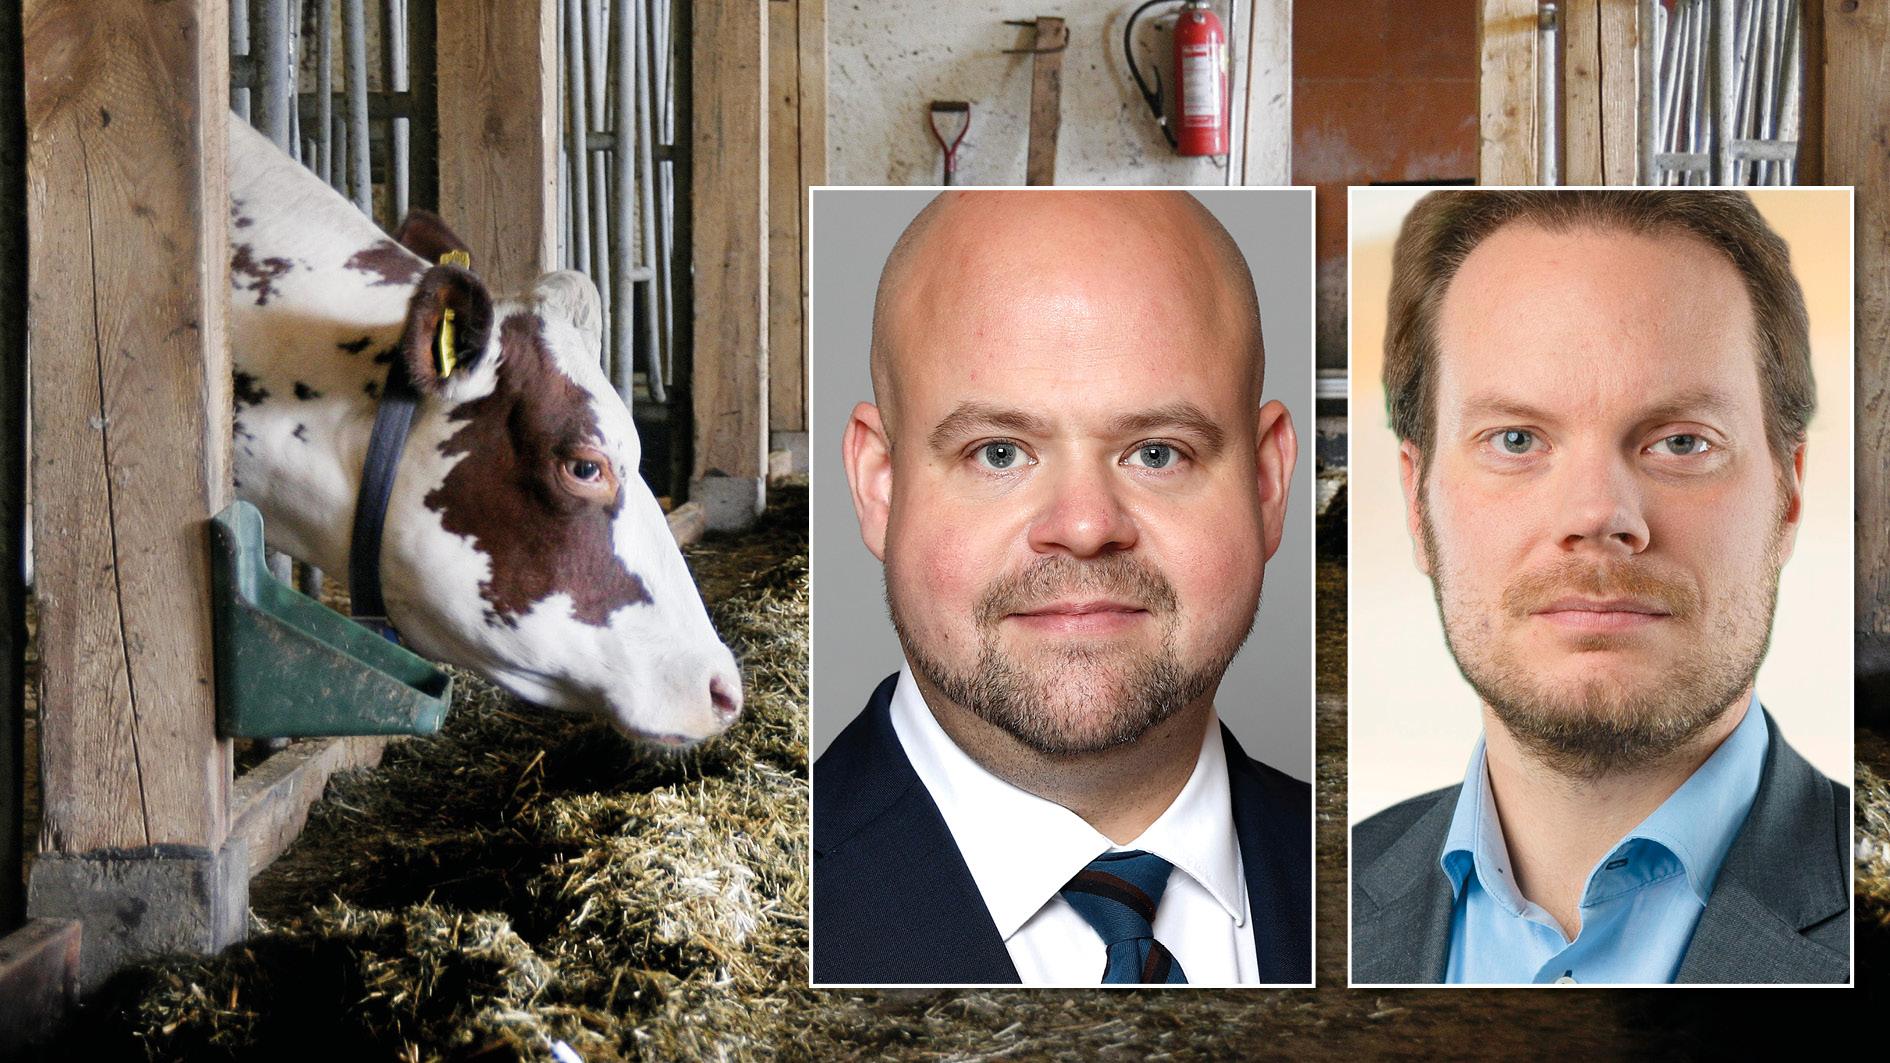 I dag har regeringen beslutat att tillsätta en utredning med syfte att ge stärkt konkurrenskraft för livsmedelsproducenter och att upprätthålla ett starkt djurskydd, skriver landsbygdsminister Peter Kullgren och Martin Kinnunen, SD.